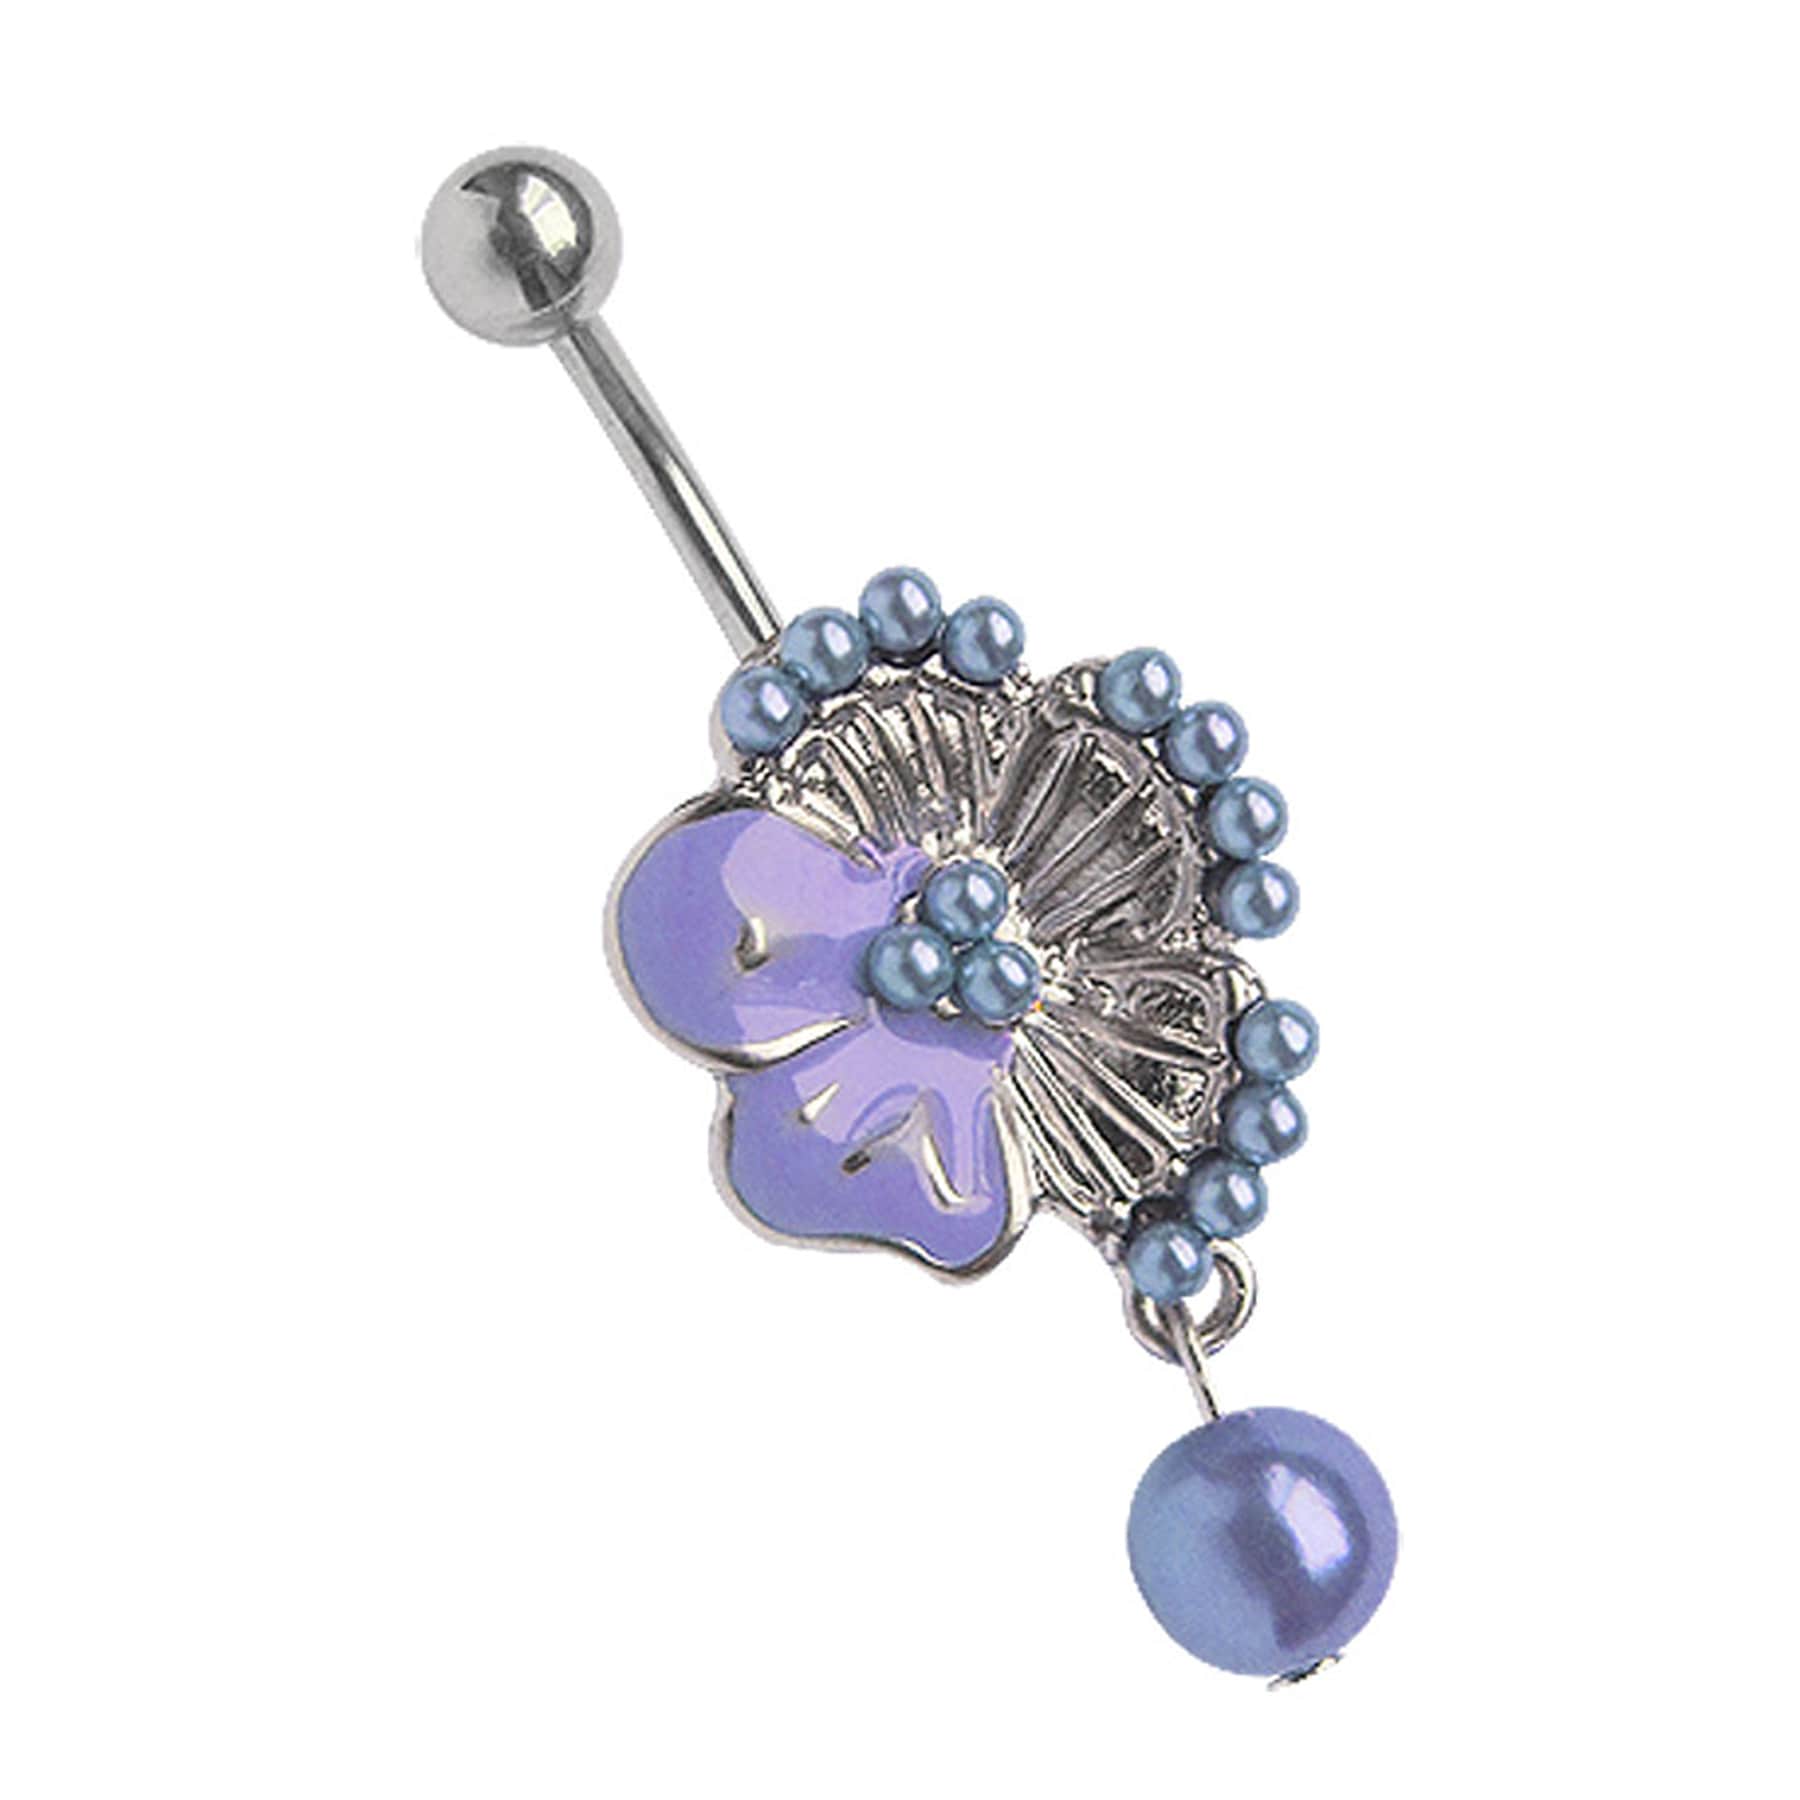 Bauchnabelpiercing »Piercing  Bauchnabelpiercing«, Blume mit vielen kleinen Perlen